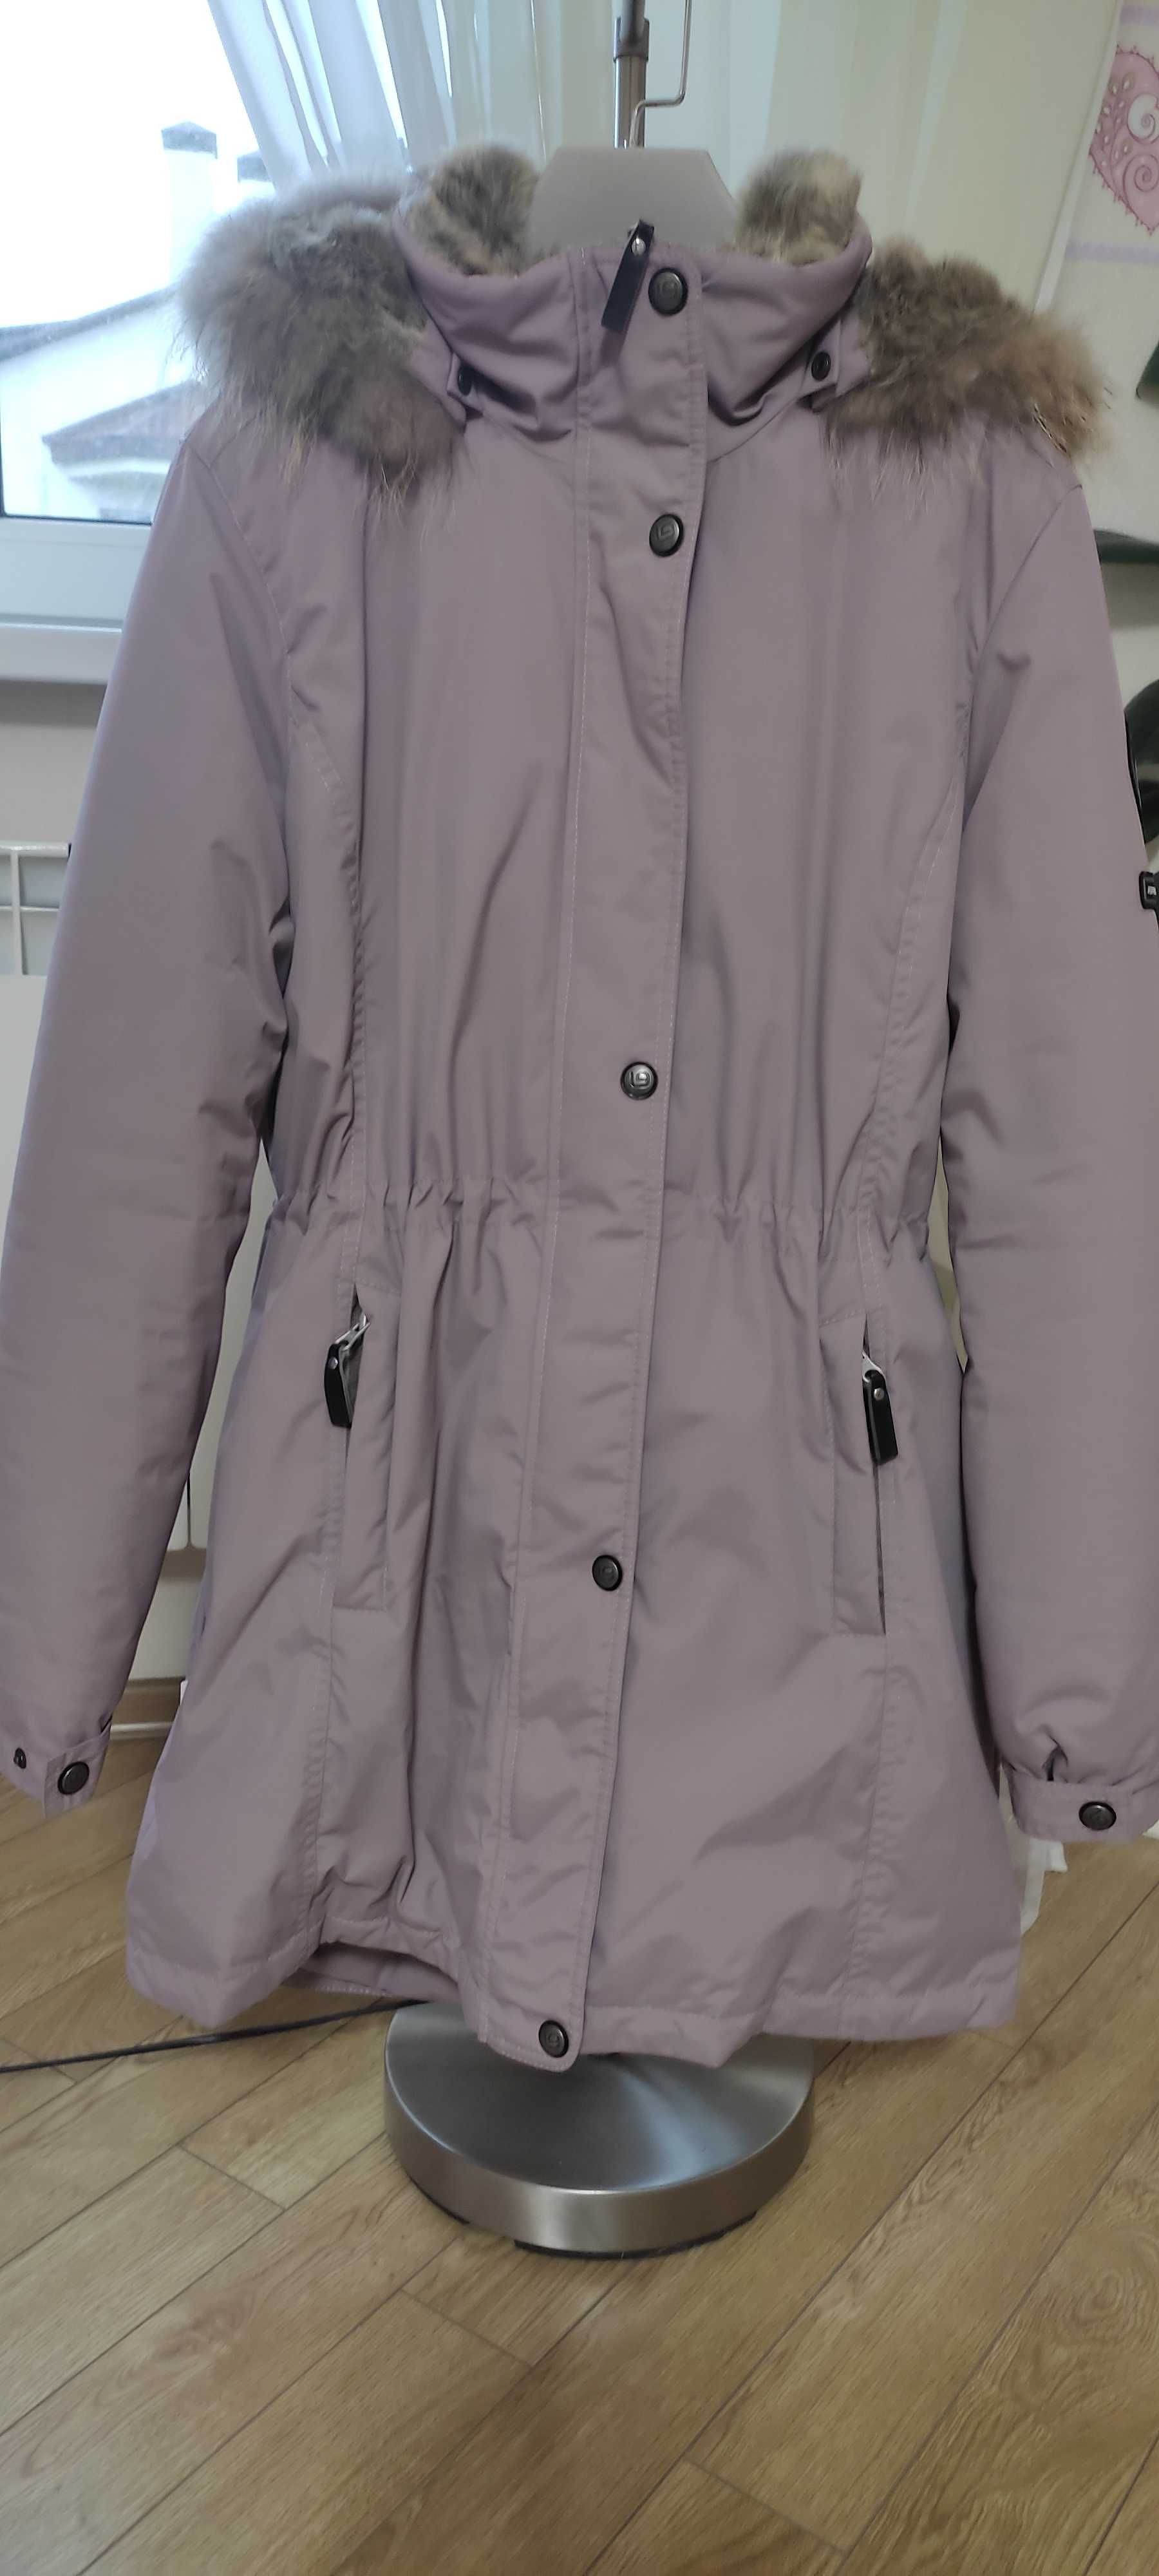 Зимова куртка-парка зі знімним капюшоном Lenne на дівчину  170 см